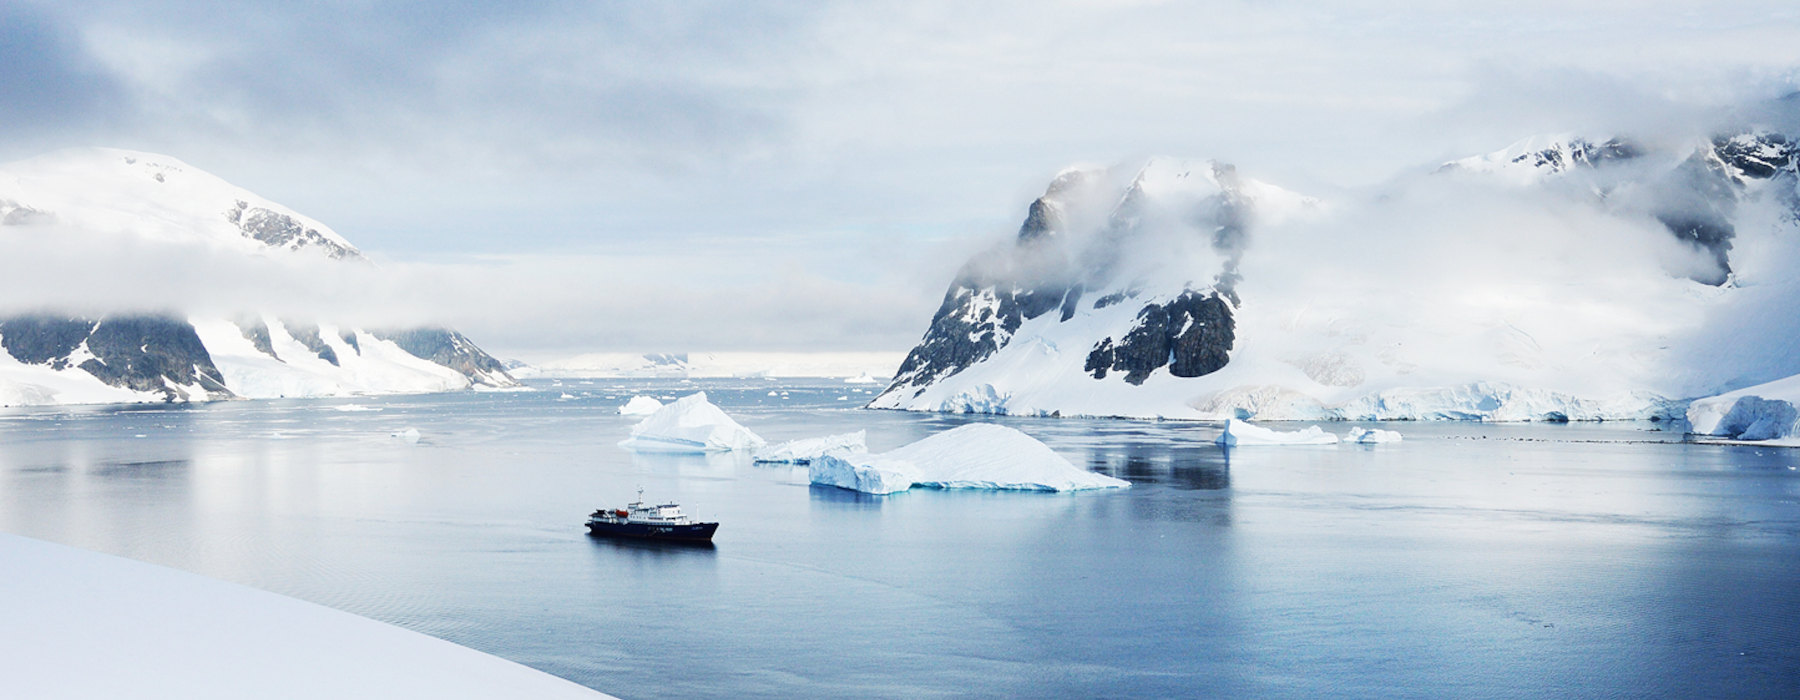 All our Antarctica<br class="hidden-md hidden-lg" /> Luxury Holidays